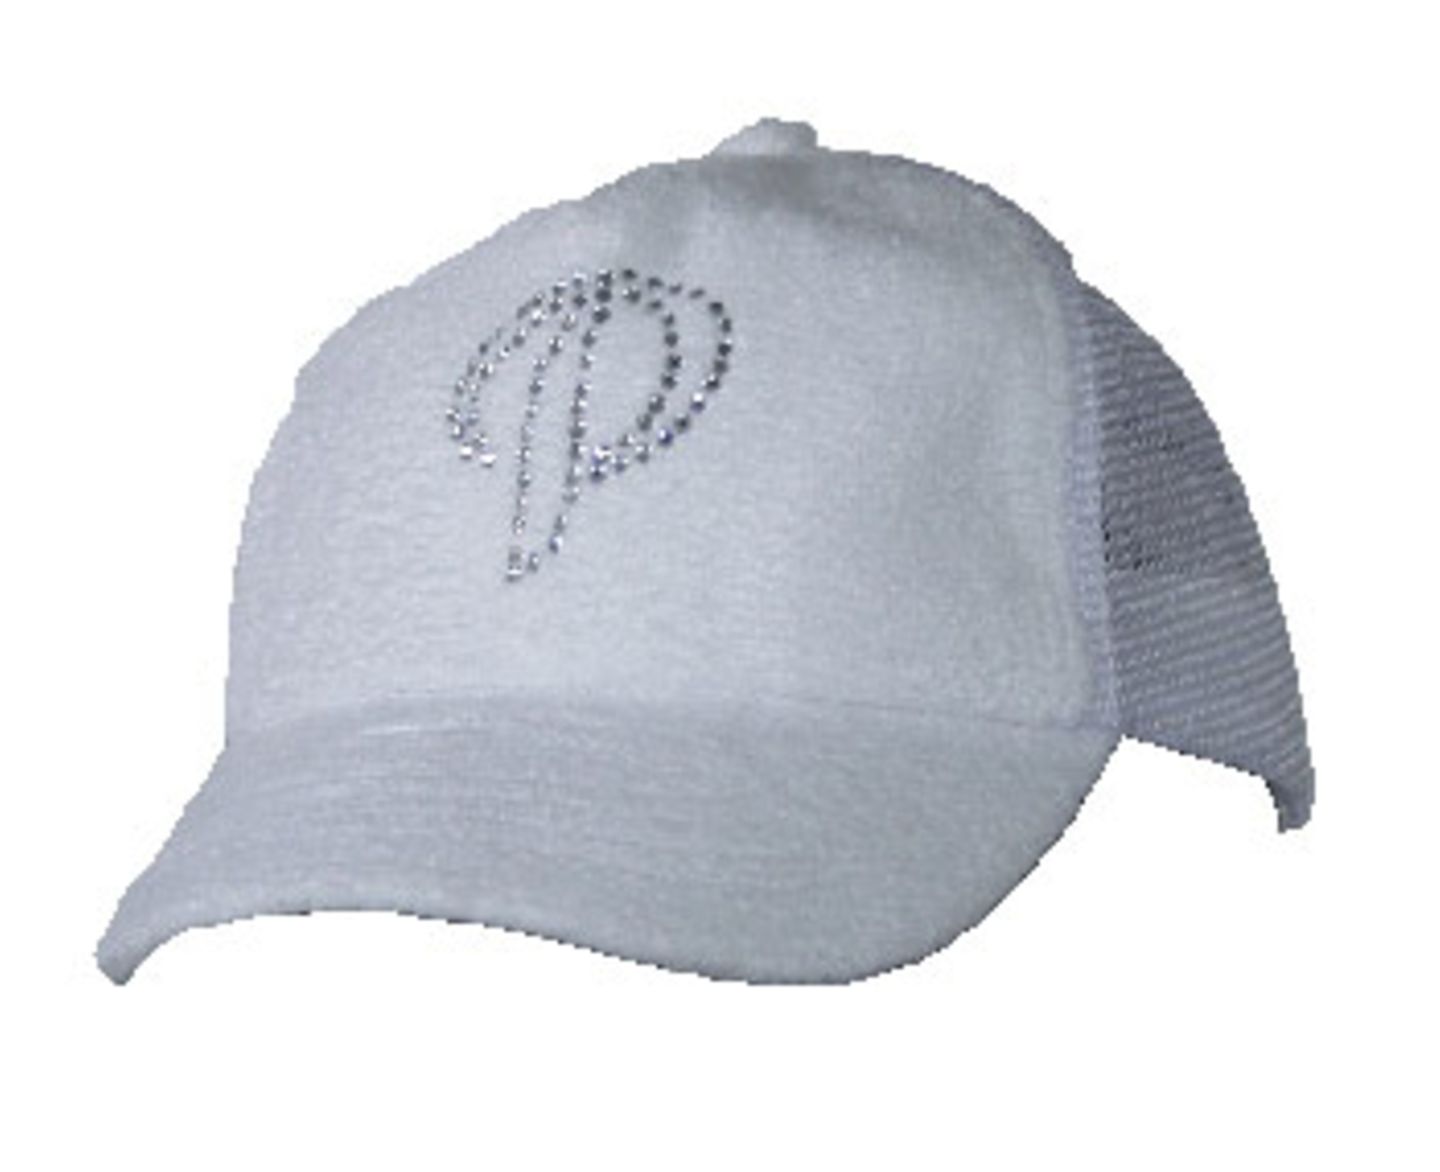 Weißes Cap mit Logo-Applikation auf dem Schirm; 17,95 Euro; von Pelle Pelle